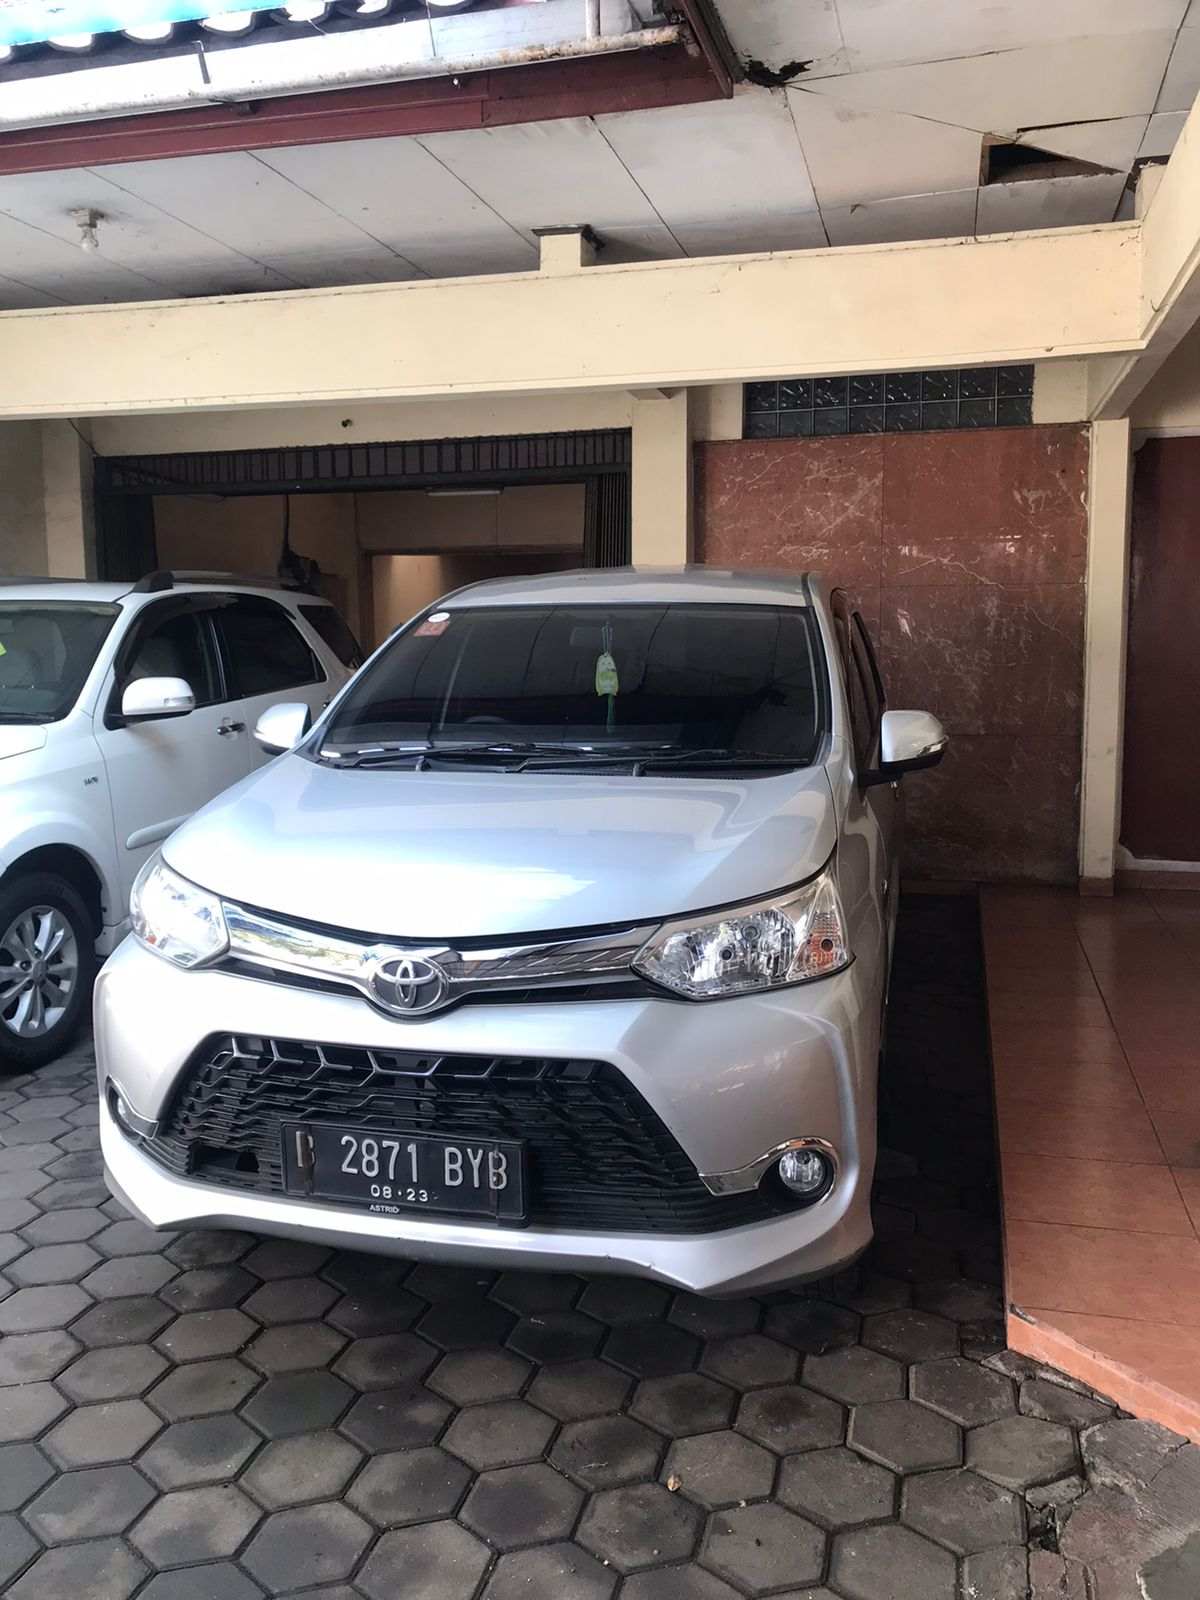 Sewa Avanza Di Surabaya